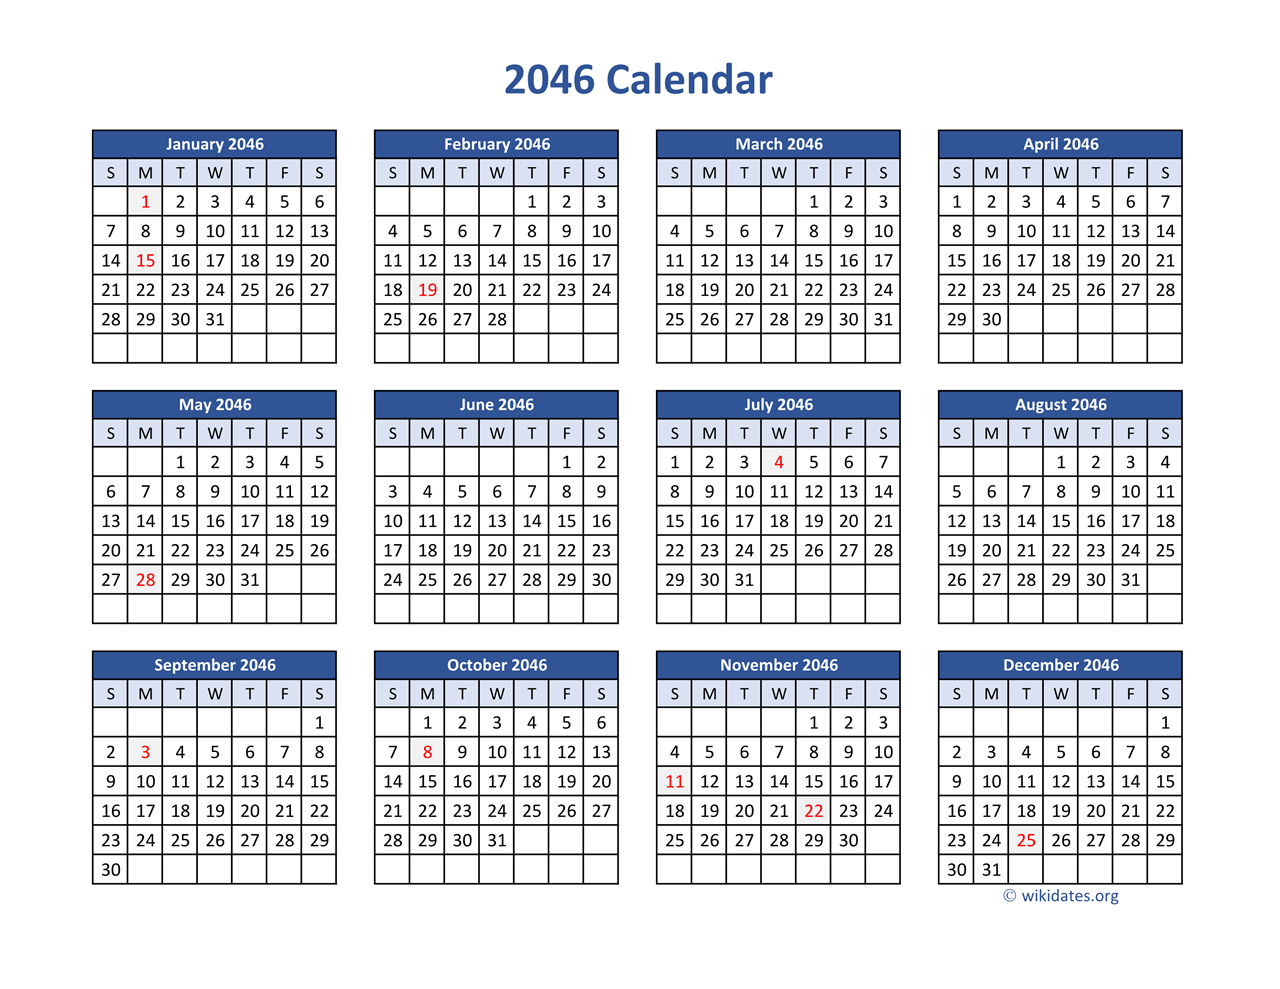 2046 Calendar in PDF | WikiDates.org